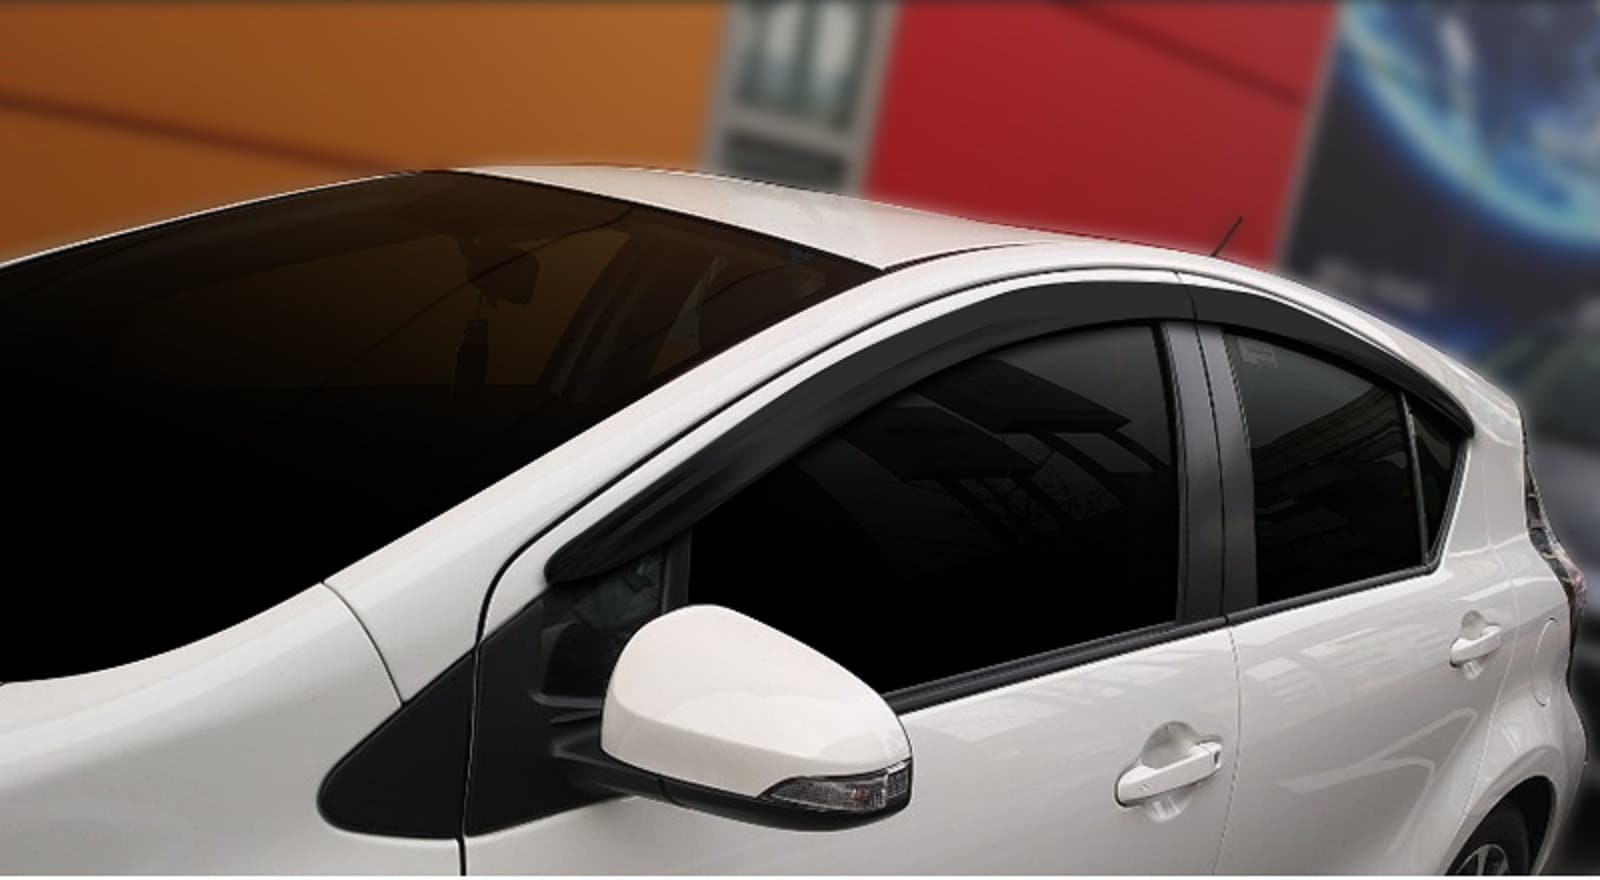 Déflecteurs de vent de fenêtre de voiture 4 pièces en plastique ABS noir  teinté pour Ford